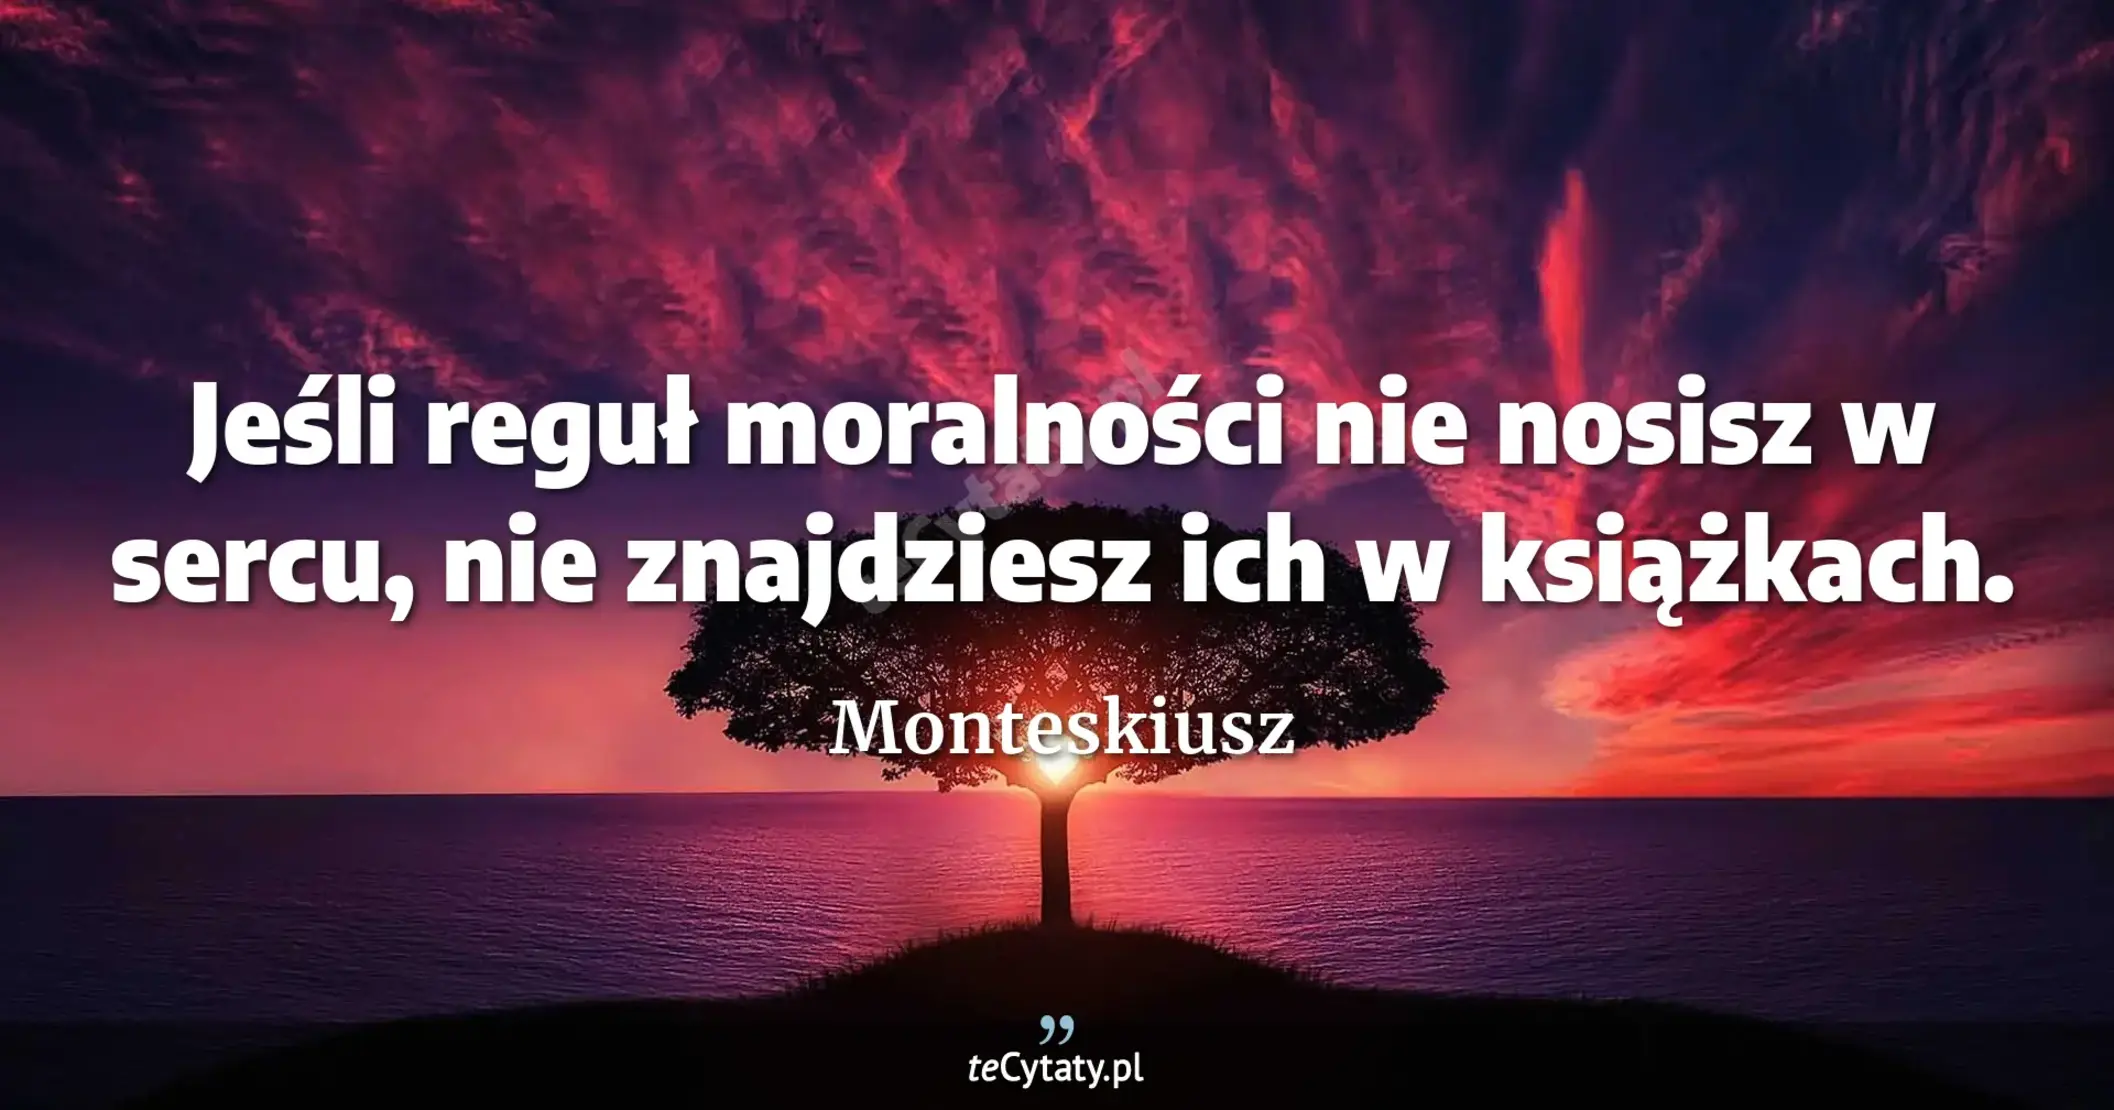 Jeśli reguł moralności nie nosisz w sercu, nie znajdziesz ich w książkach. - Monteskiusz